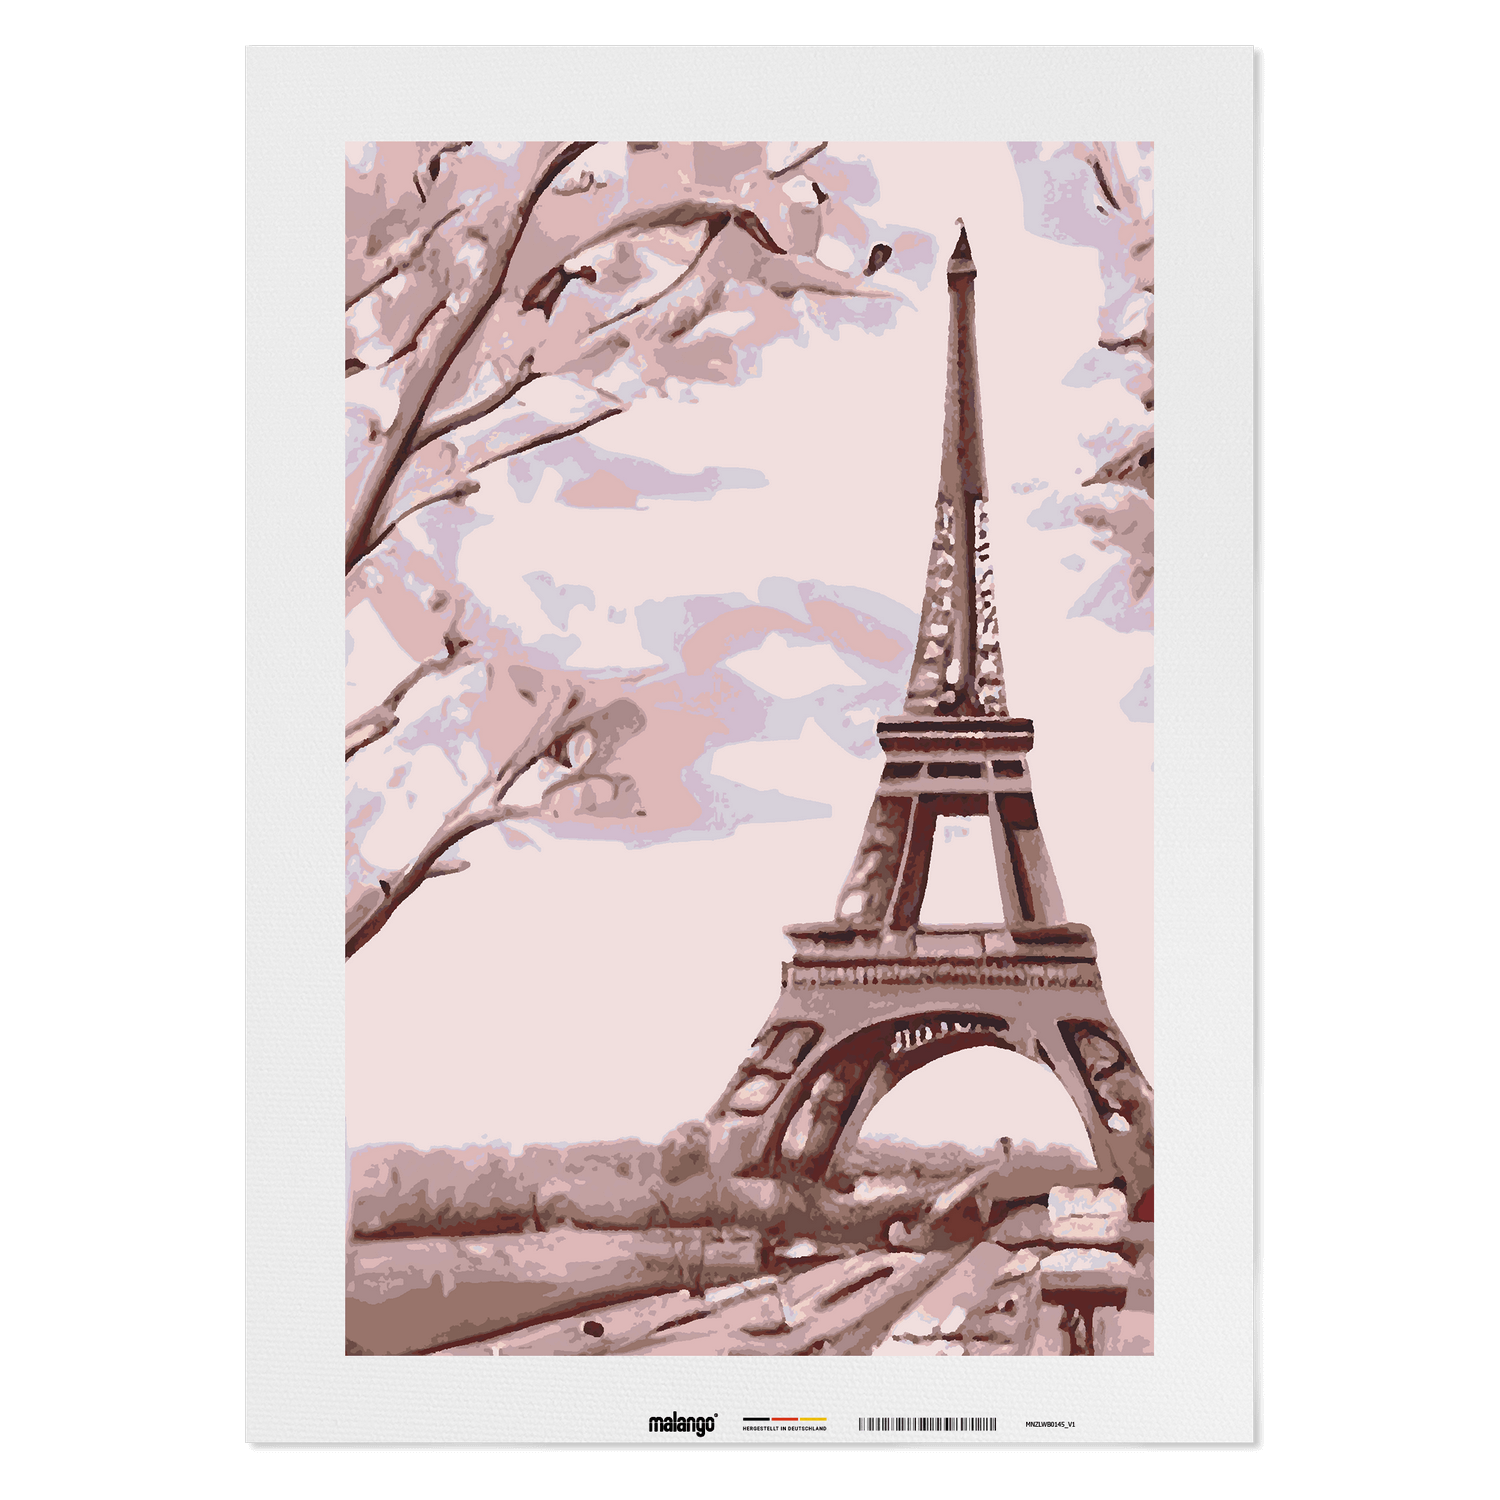 Malen nach Zahlen - Blick auf den Eiffelturm No. 2